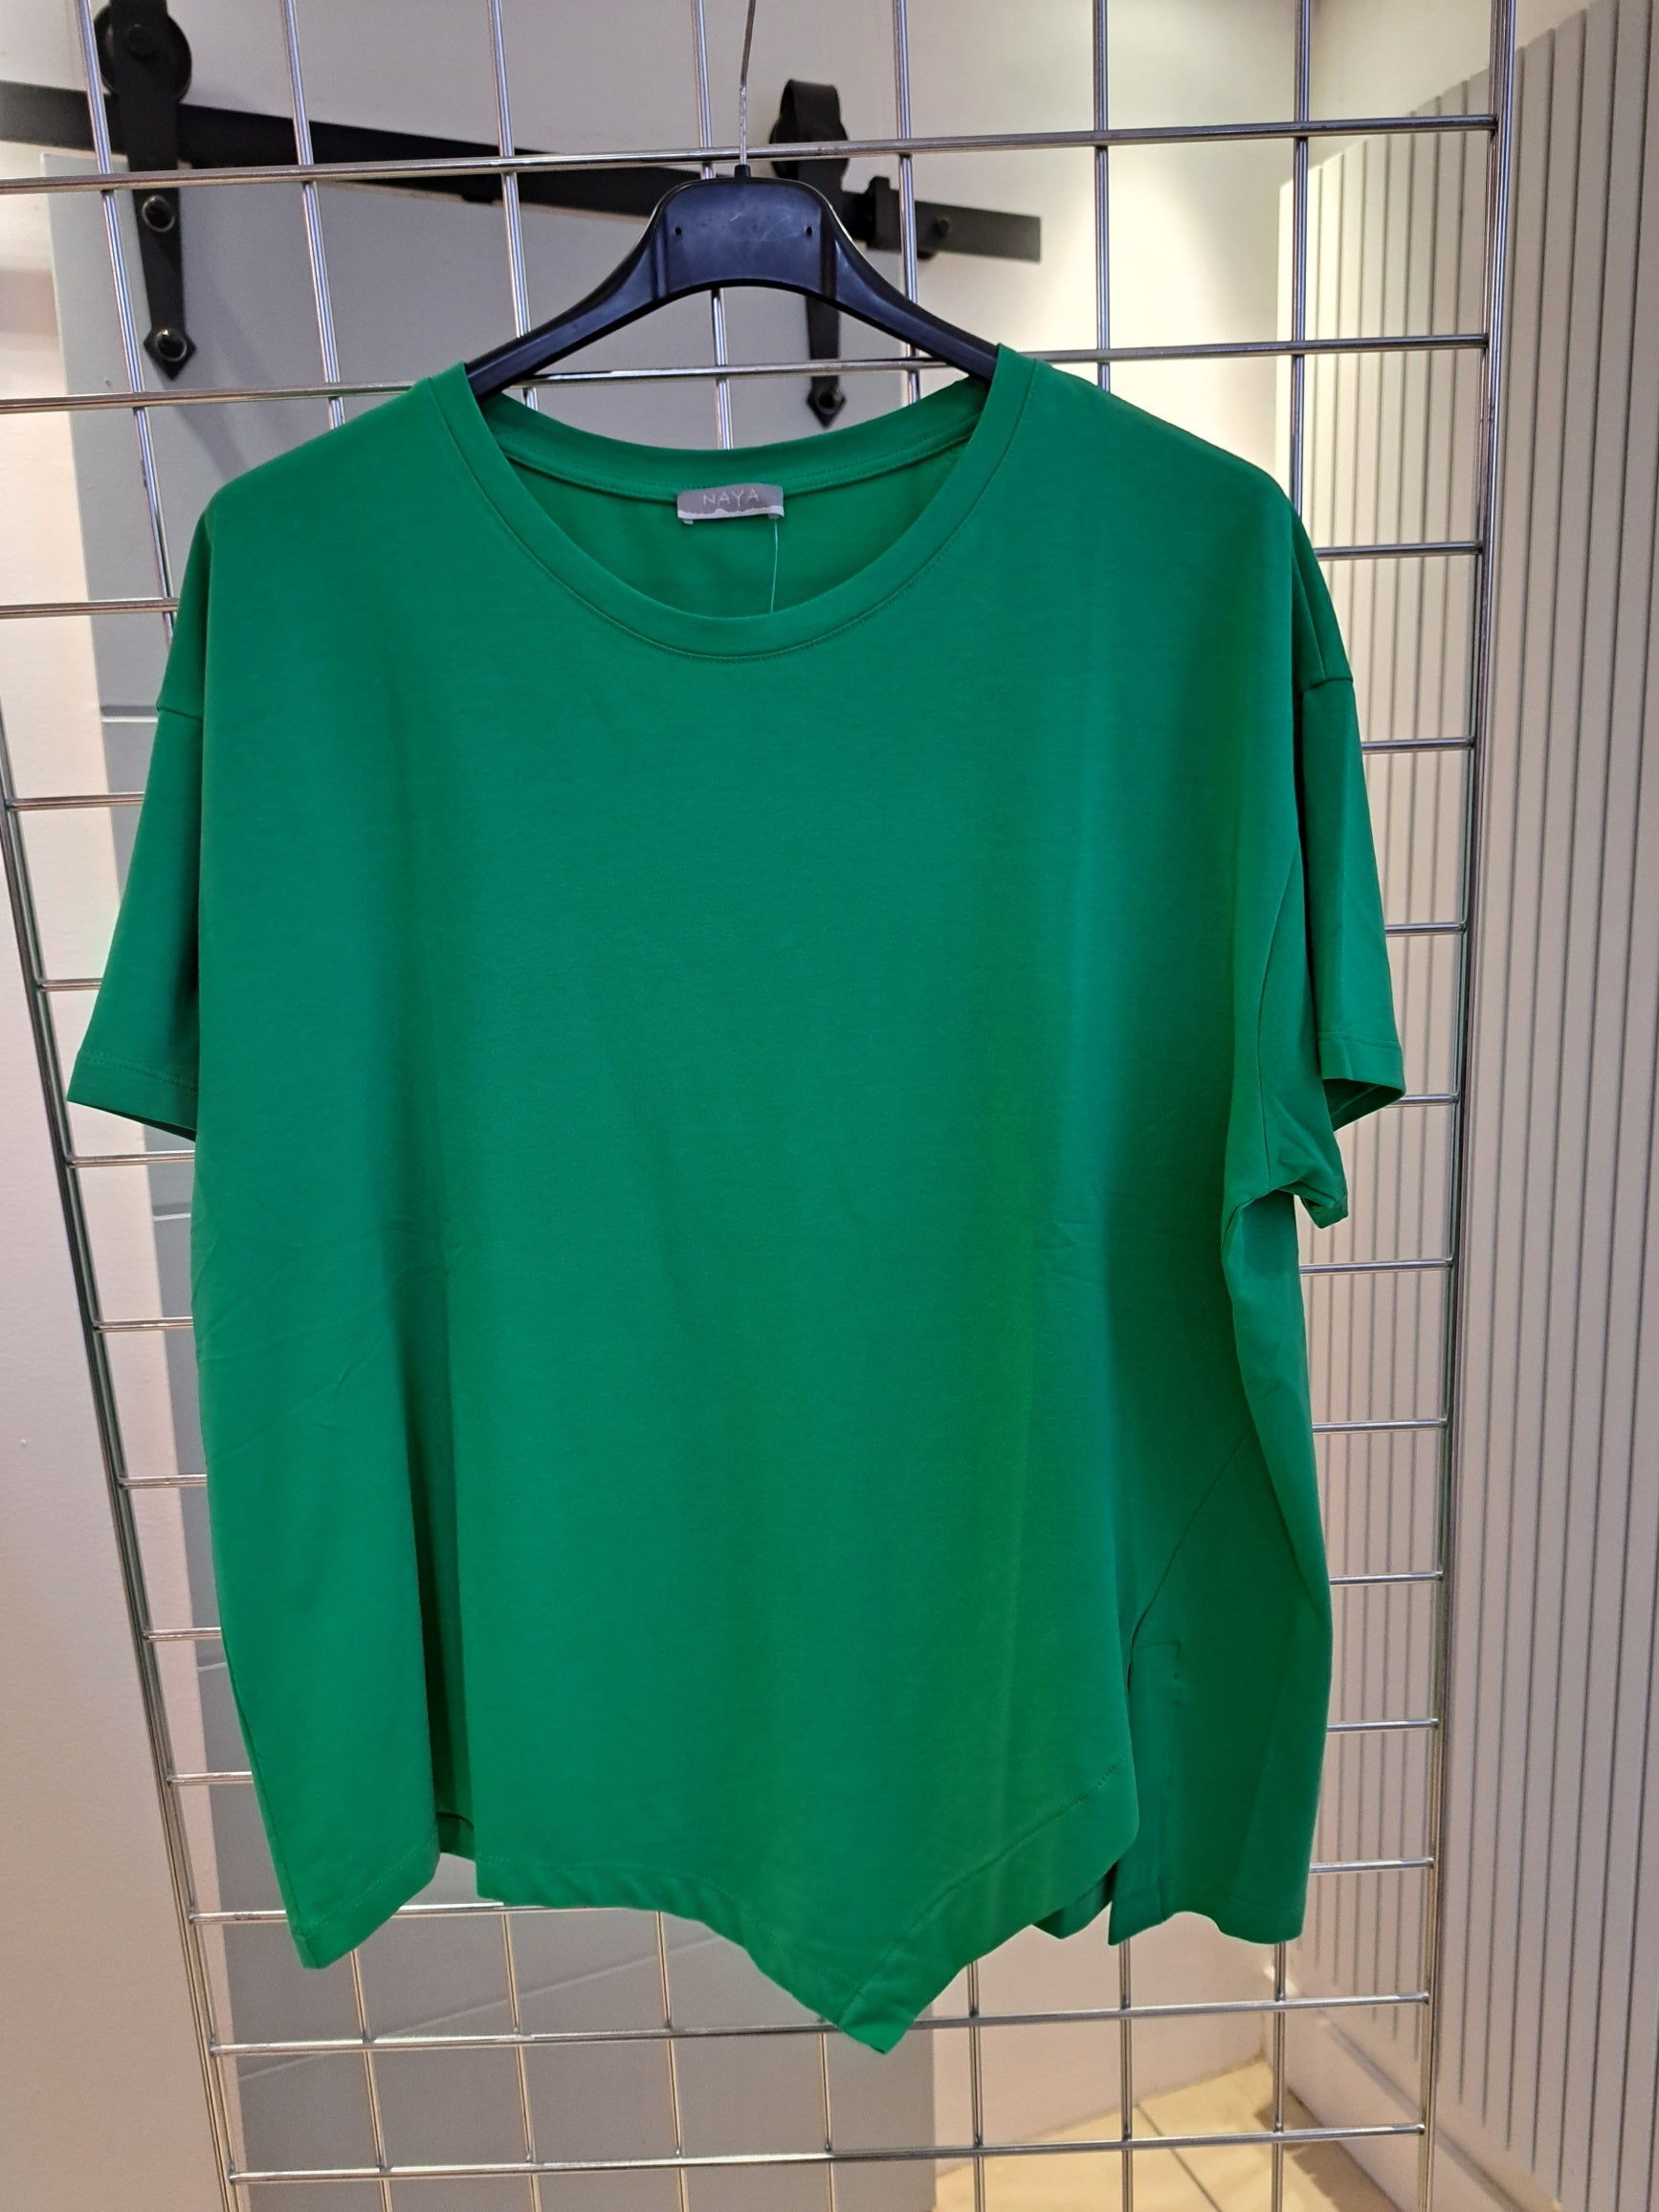 Naya Tee shirt Green - Maya Maya Ltd